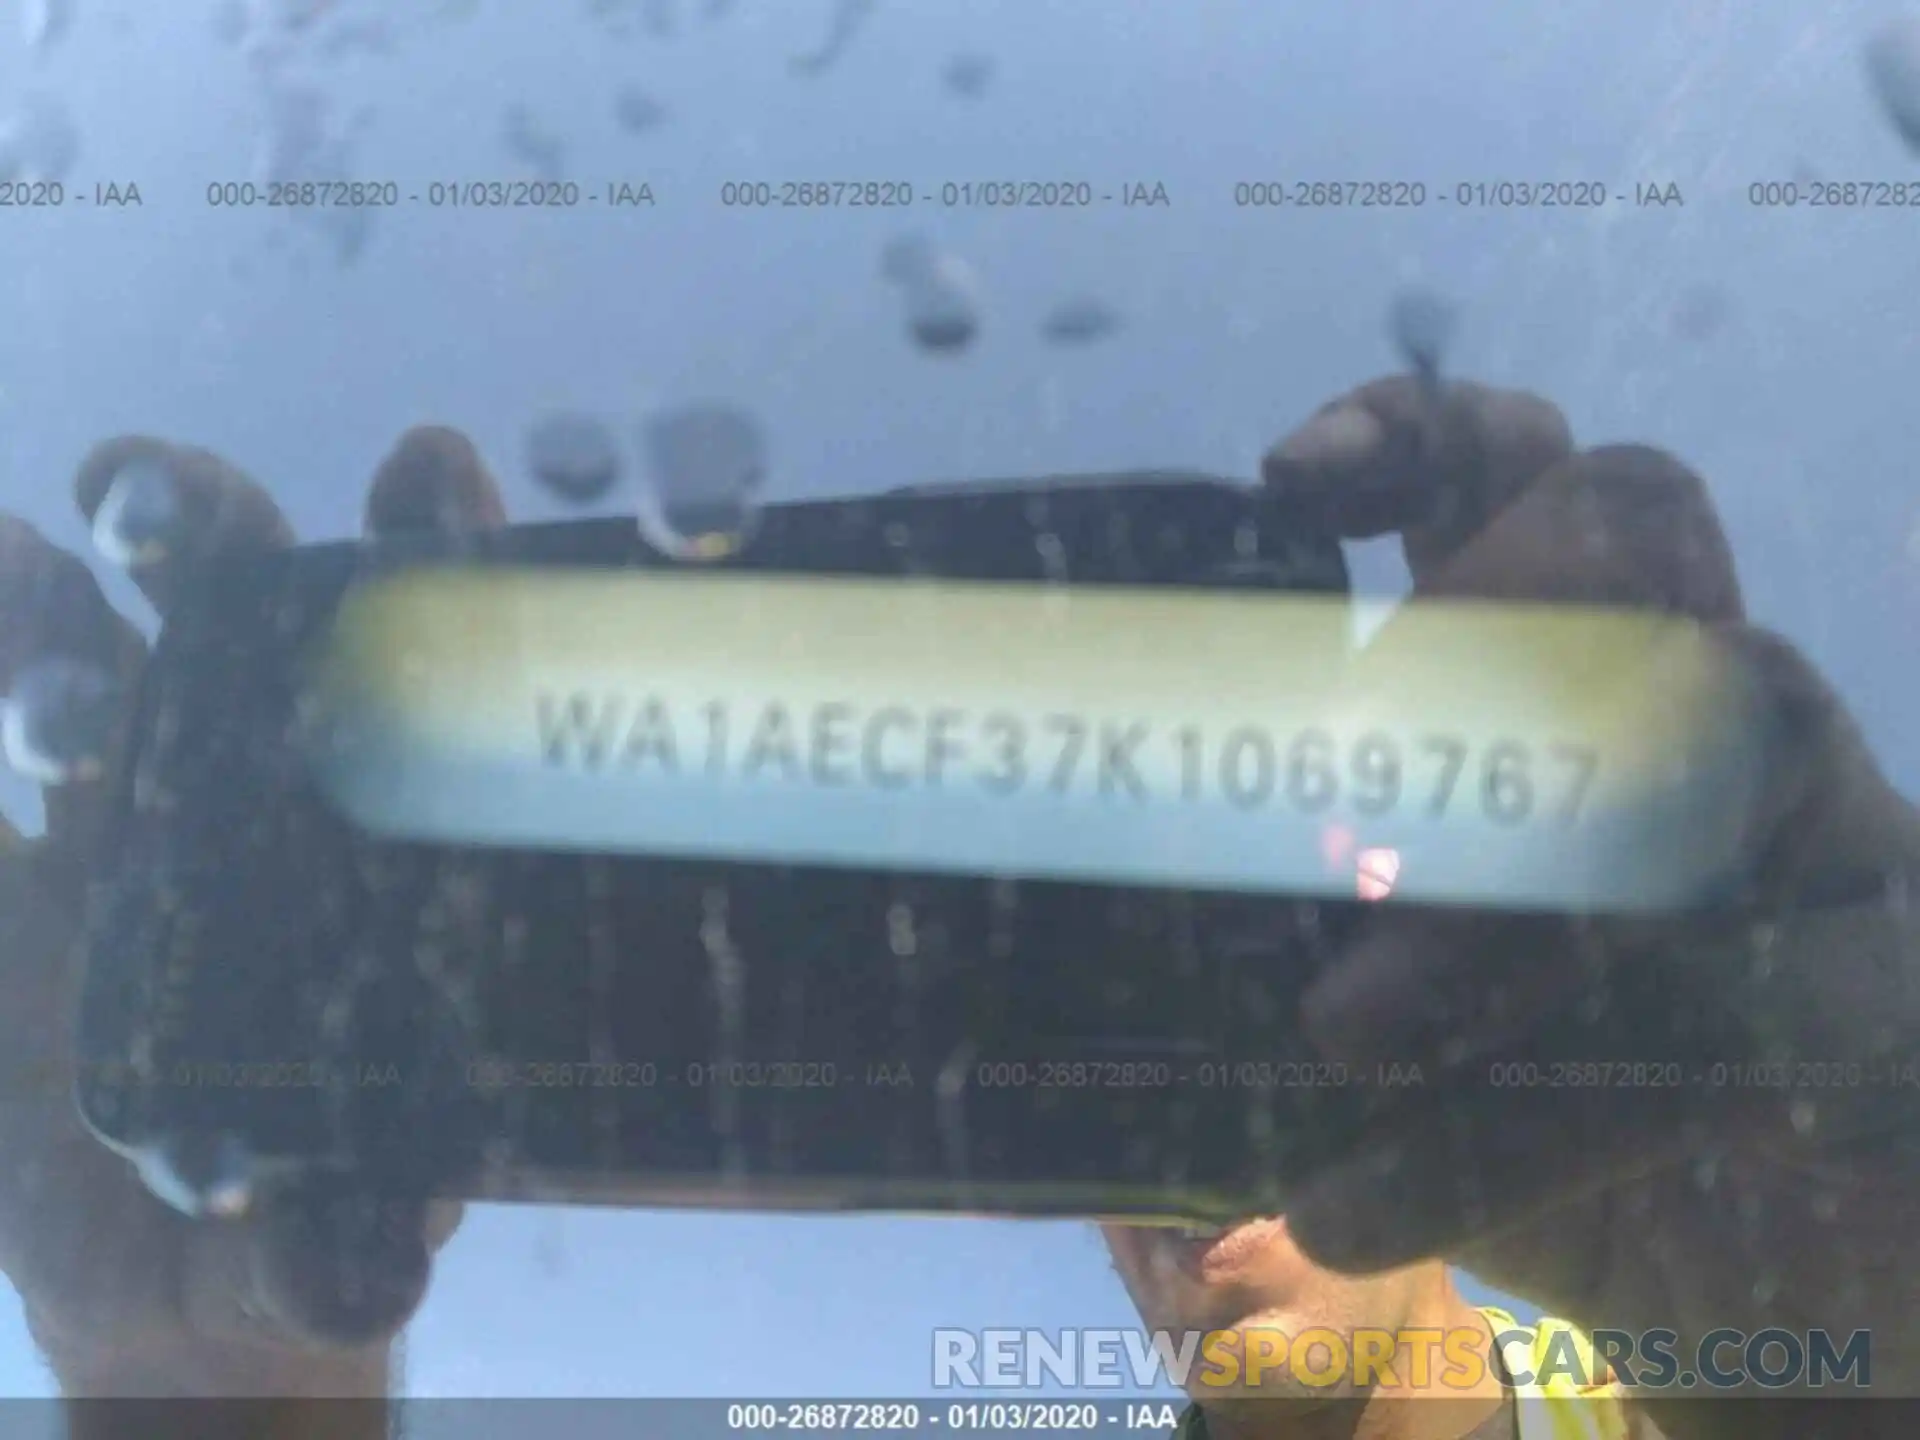 9 Фотография поврежденного автомобиля WA1AECF37K1069767 AUDI Q3 2019